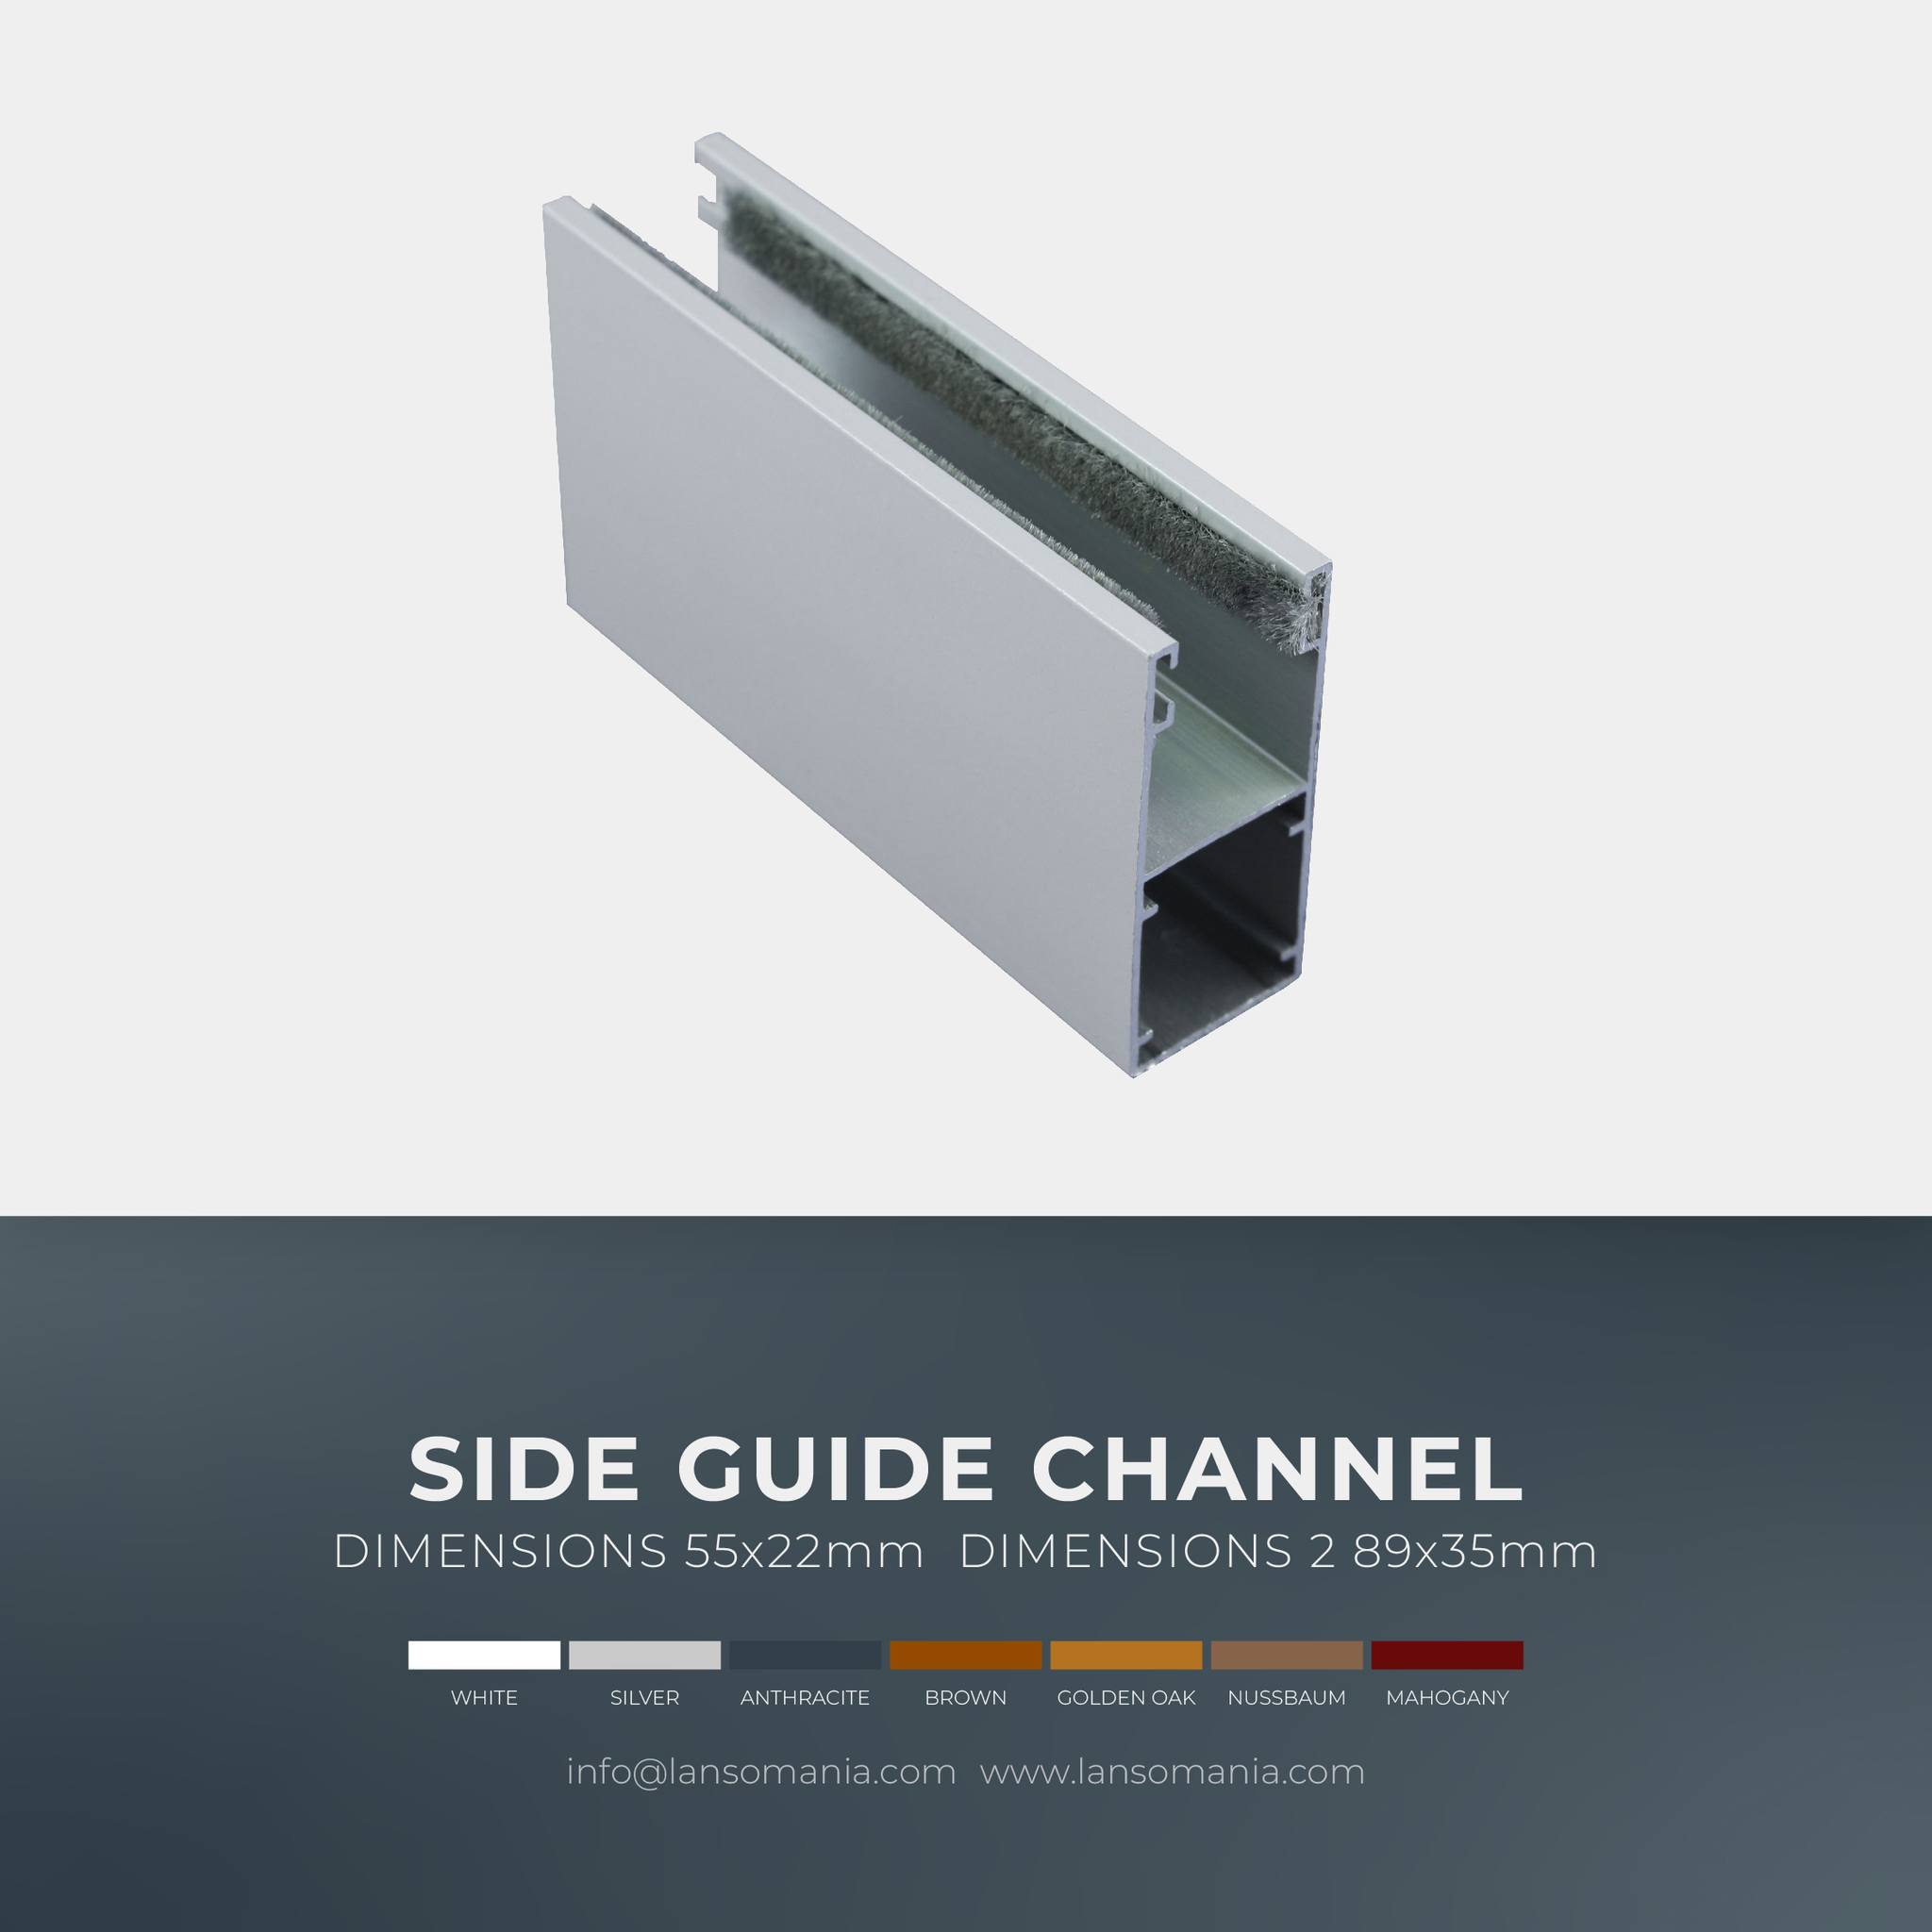 Side guide channel